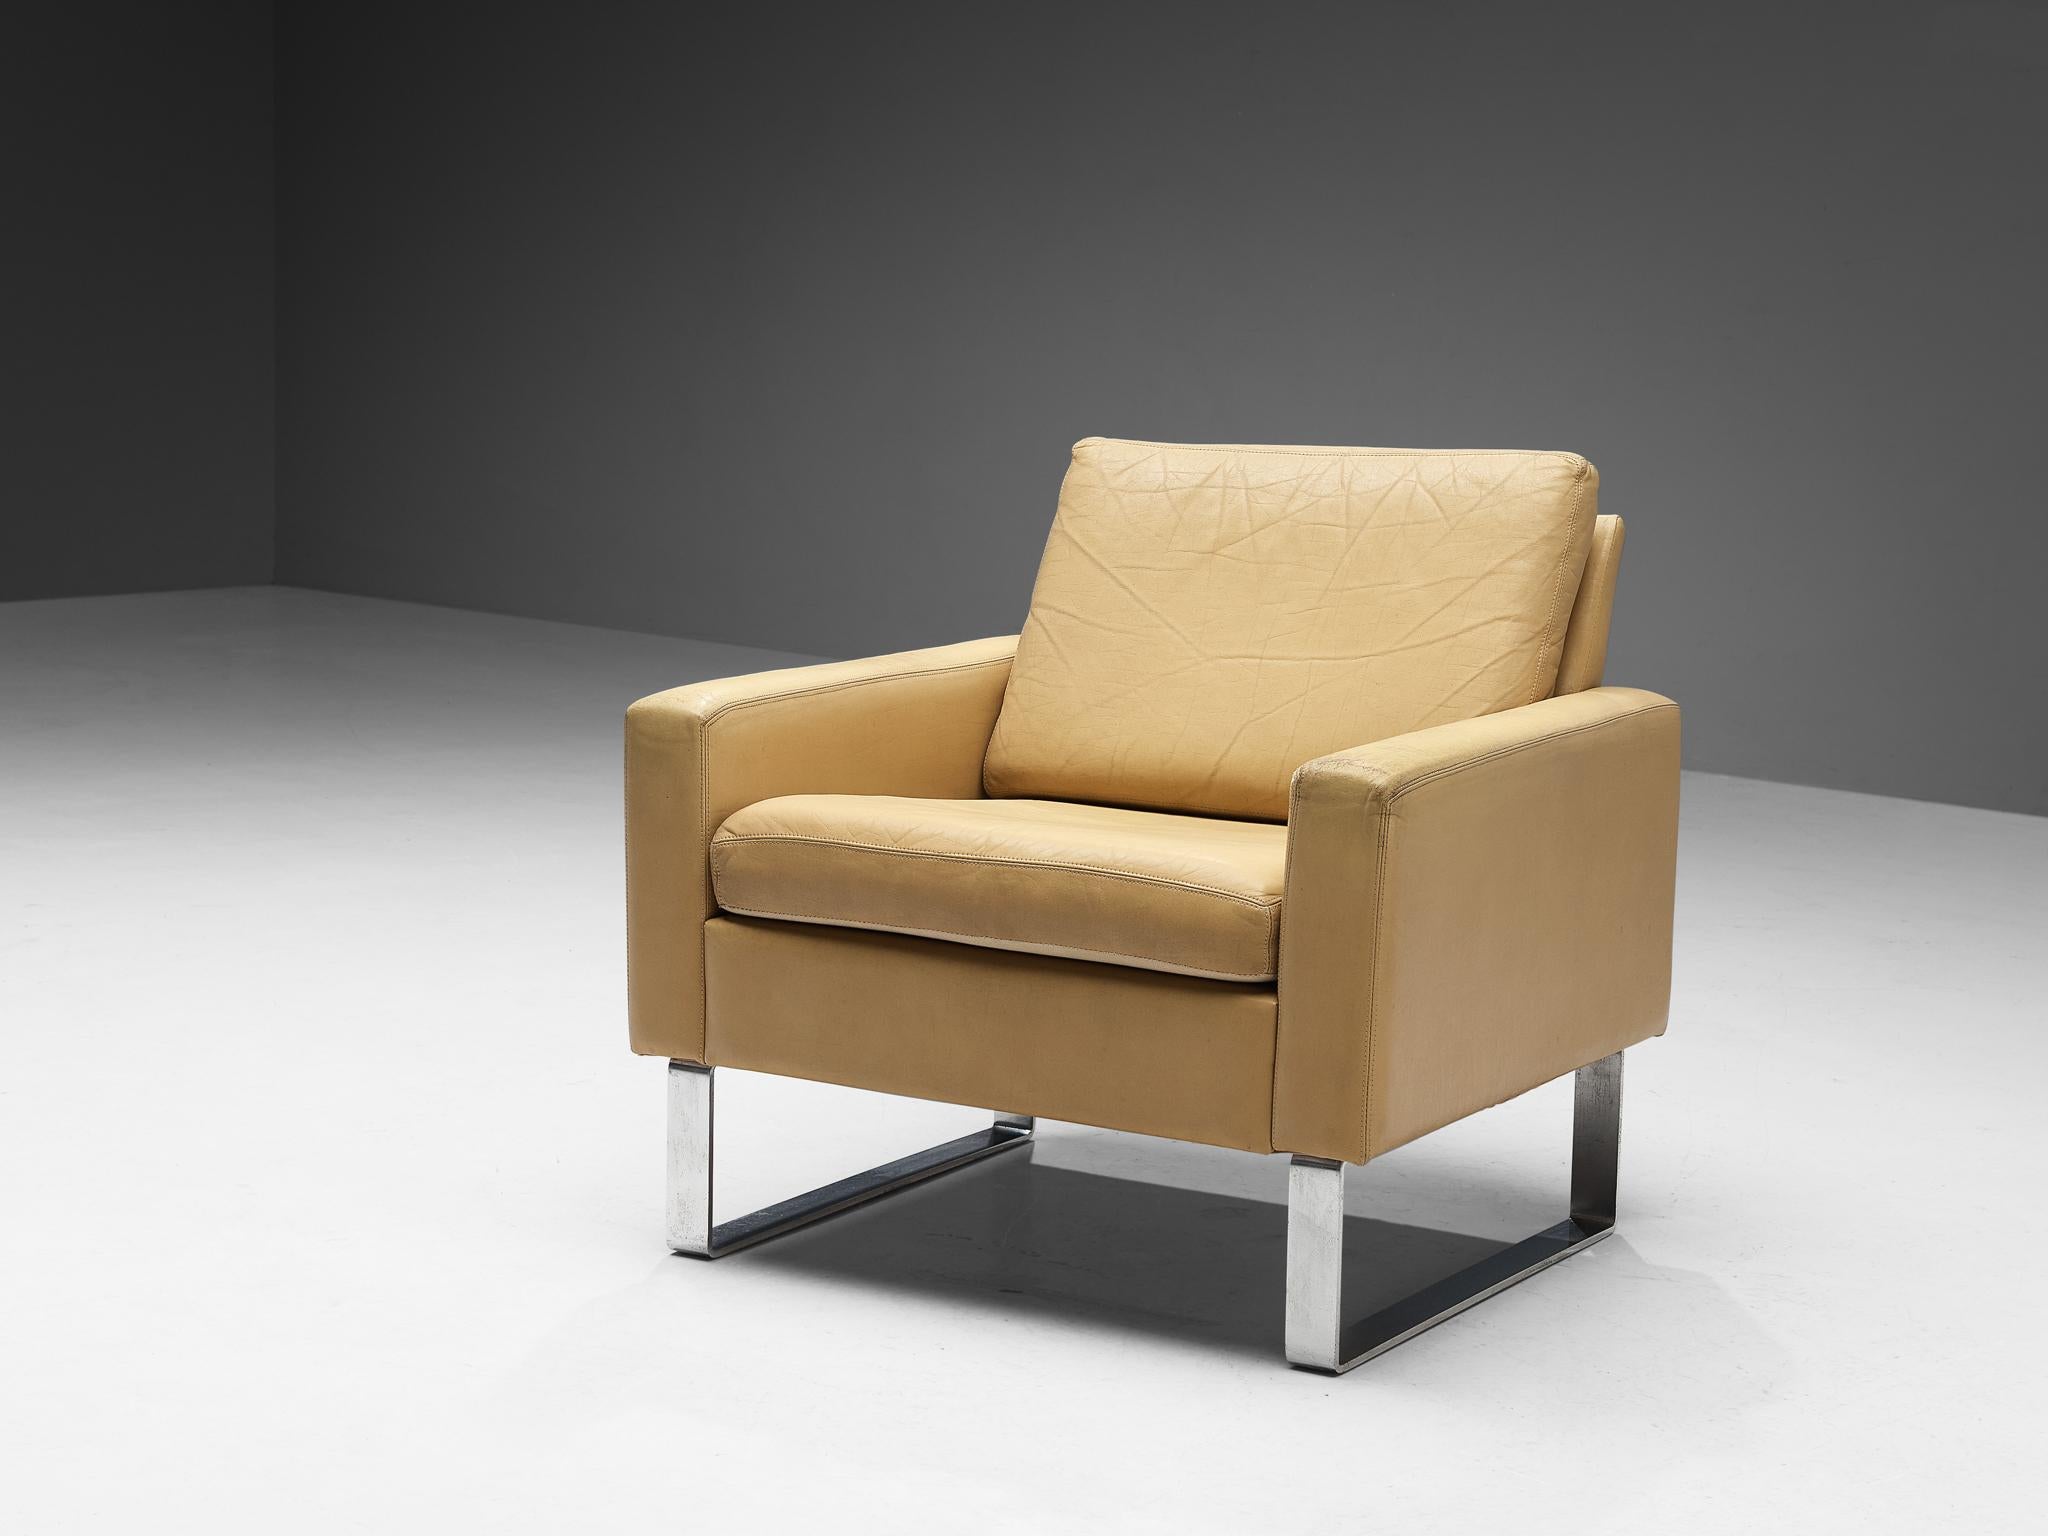 Loungesessel, Leder, Metall, Europa, 1980er Jahre

Moderner und schöner Sessel. Dieser Stuhl ist auf bescheidene Art und Weise hergestellt und ist gleichzeitig knackig und warm. Der Metallrahmen hält einen hellgelben Lederkörper. Dank der